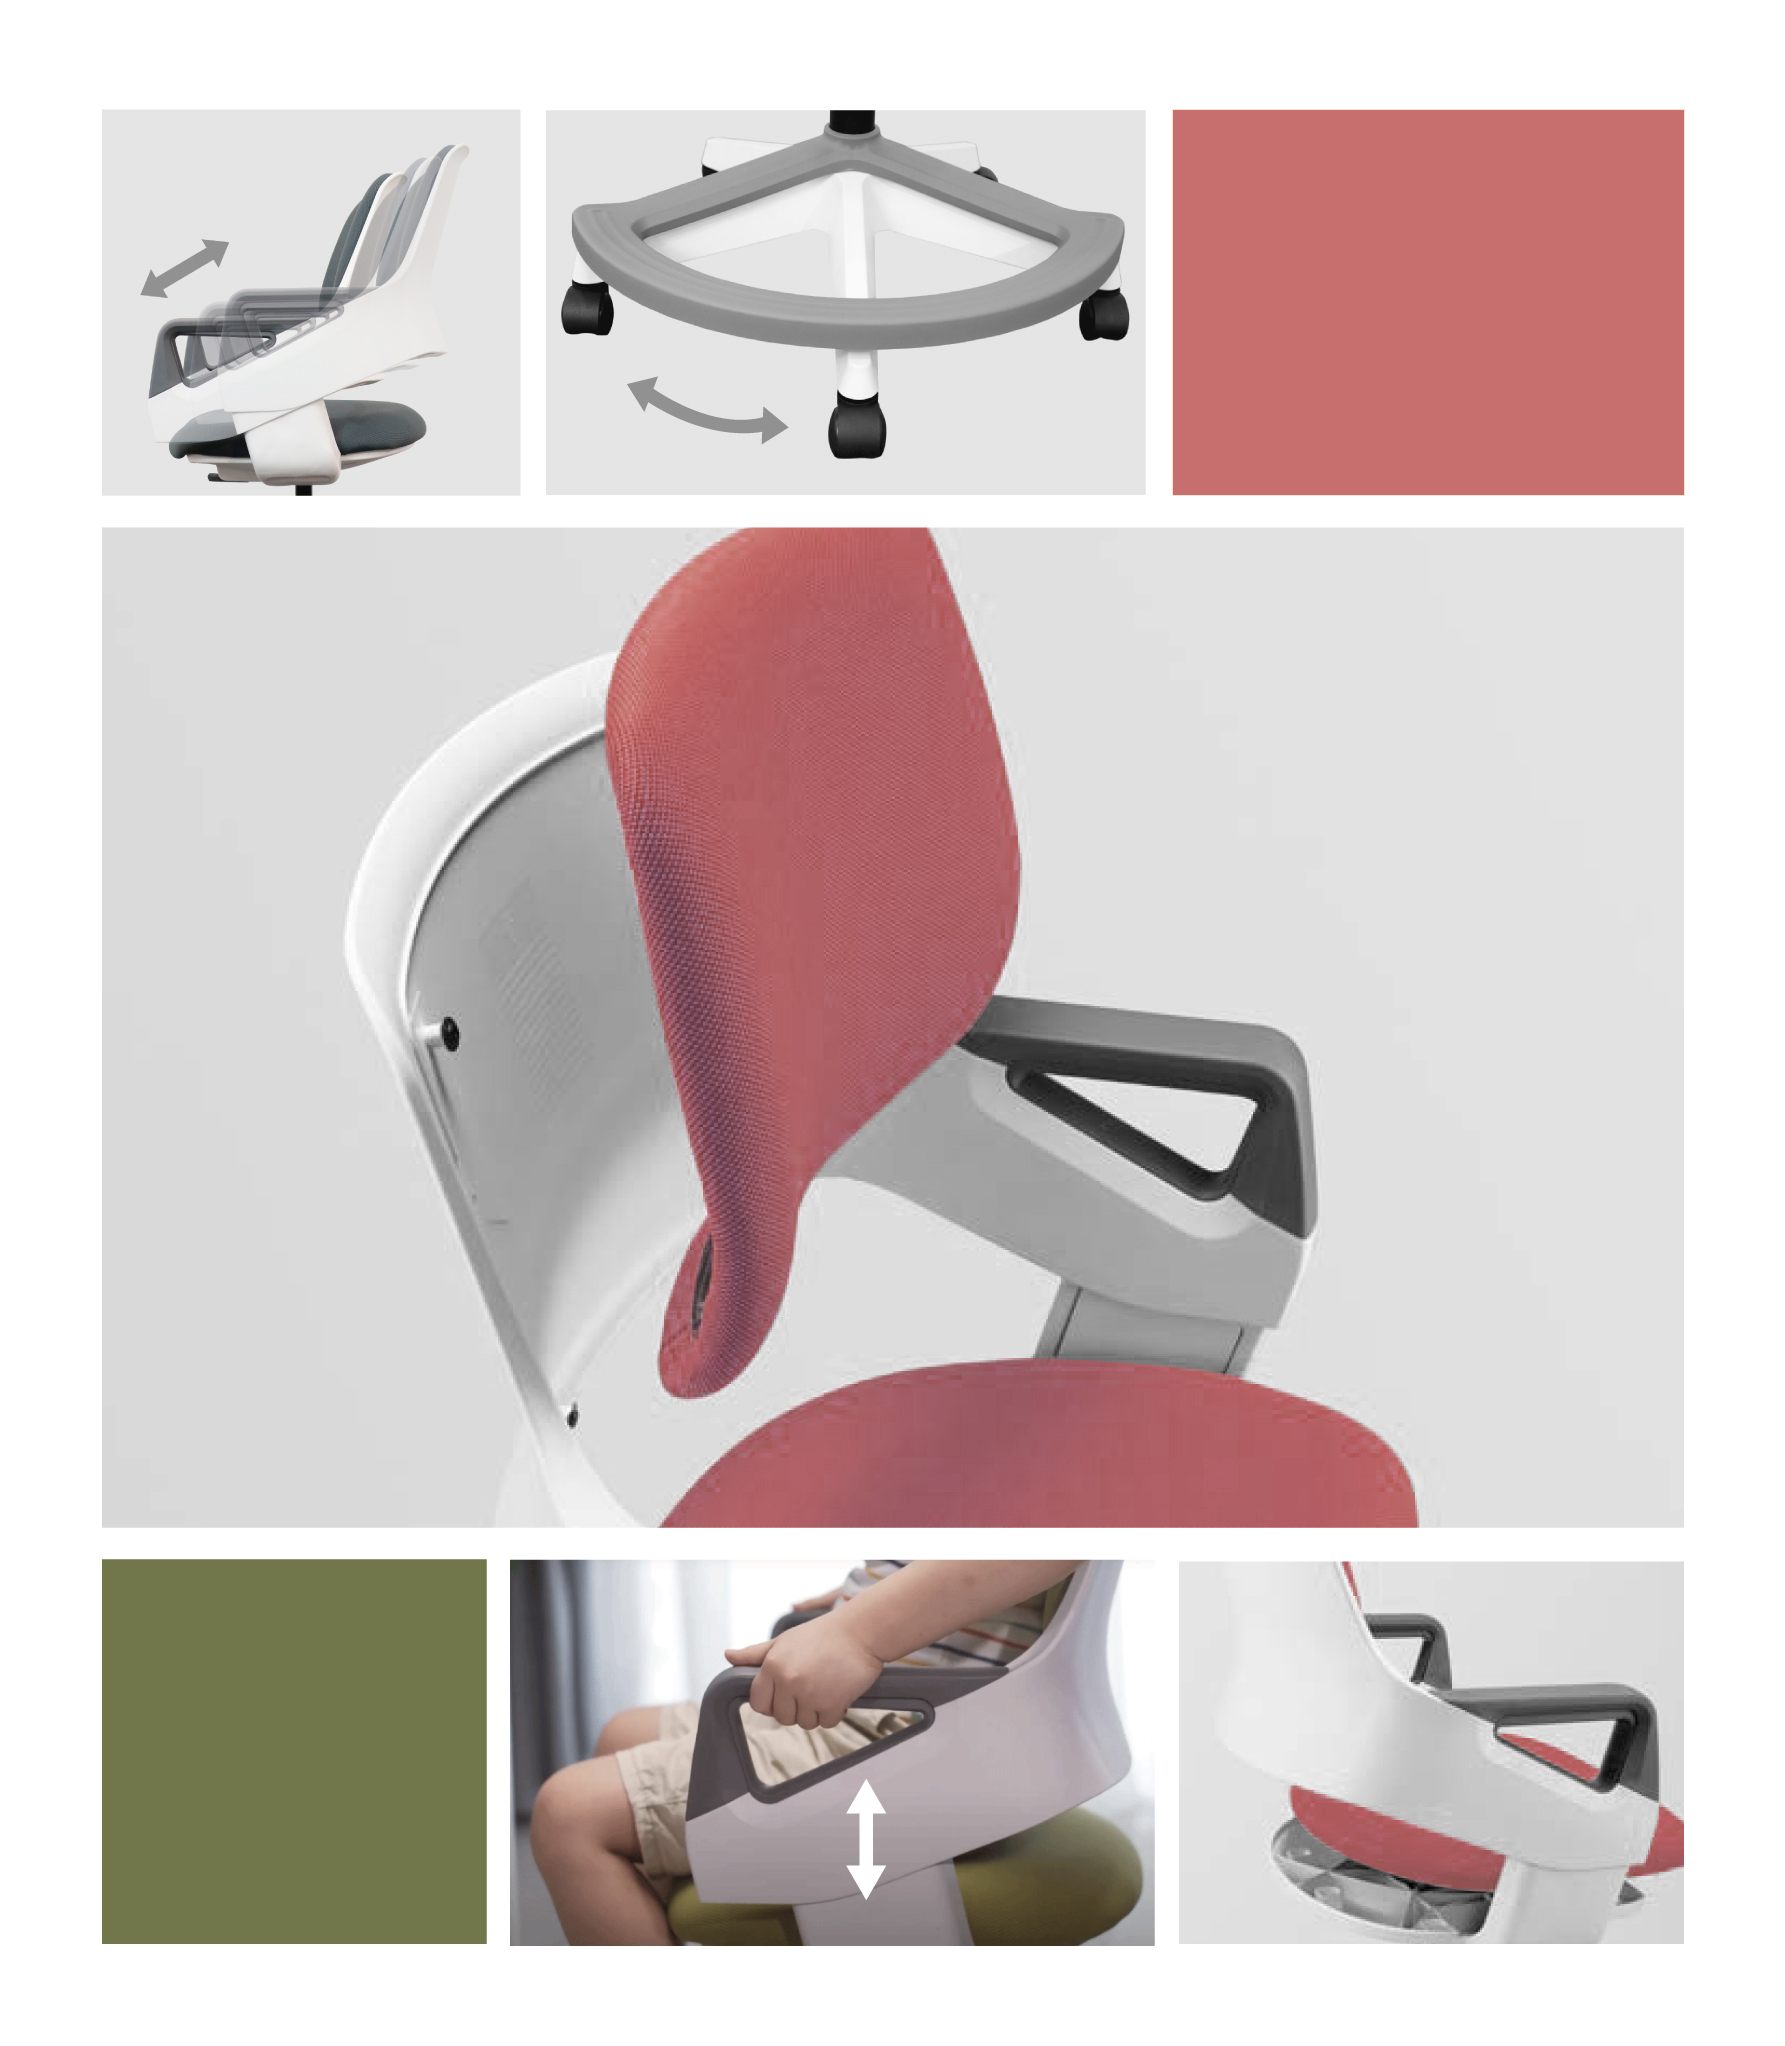 Ghế trẻ em Rooky - Ghế điều chỉnh sống lưng và nâng hạ, hạn chế bị gù, bị cận cho trẻ